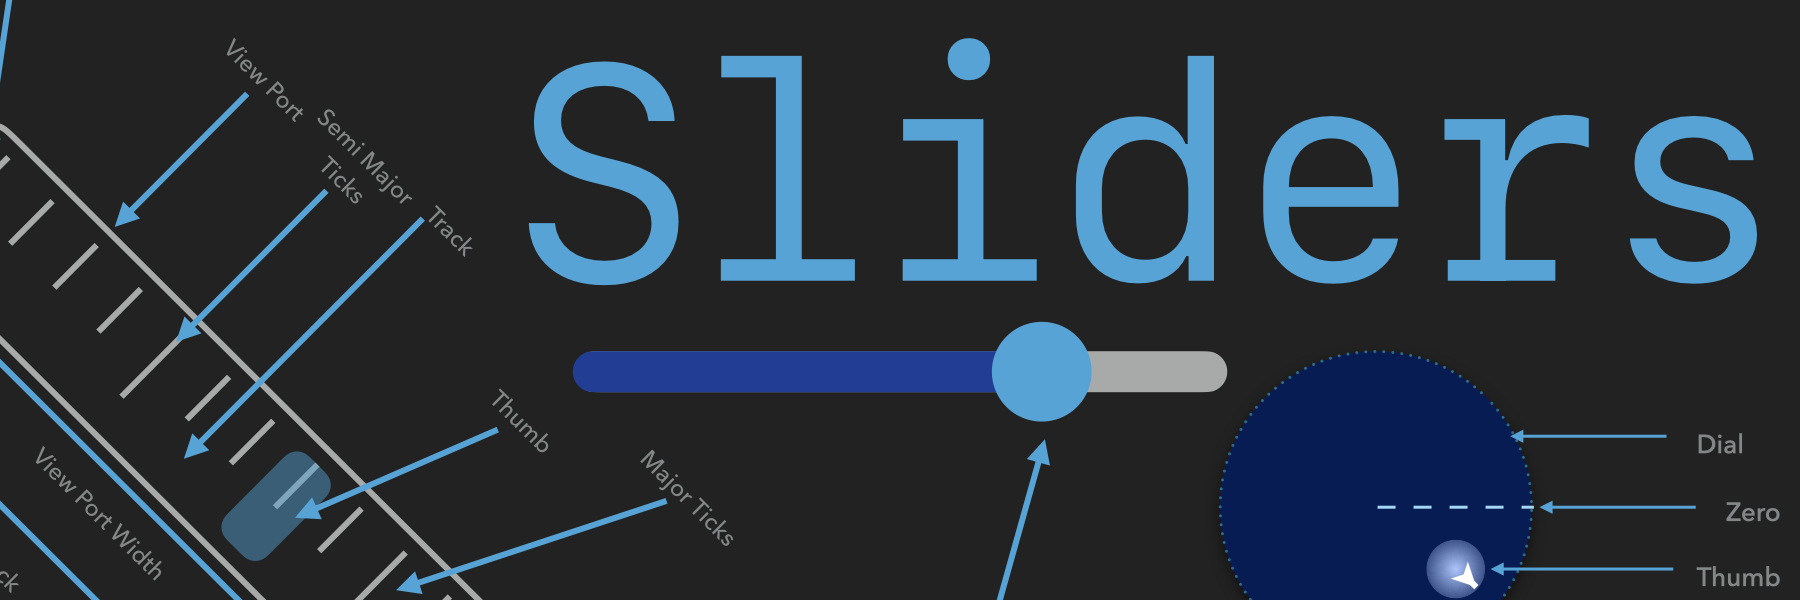 Sliders-SwiftUI